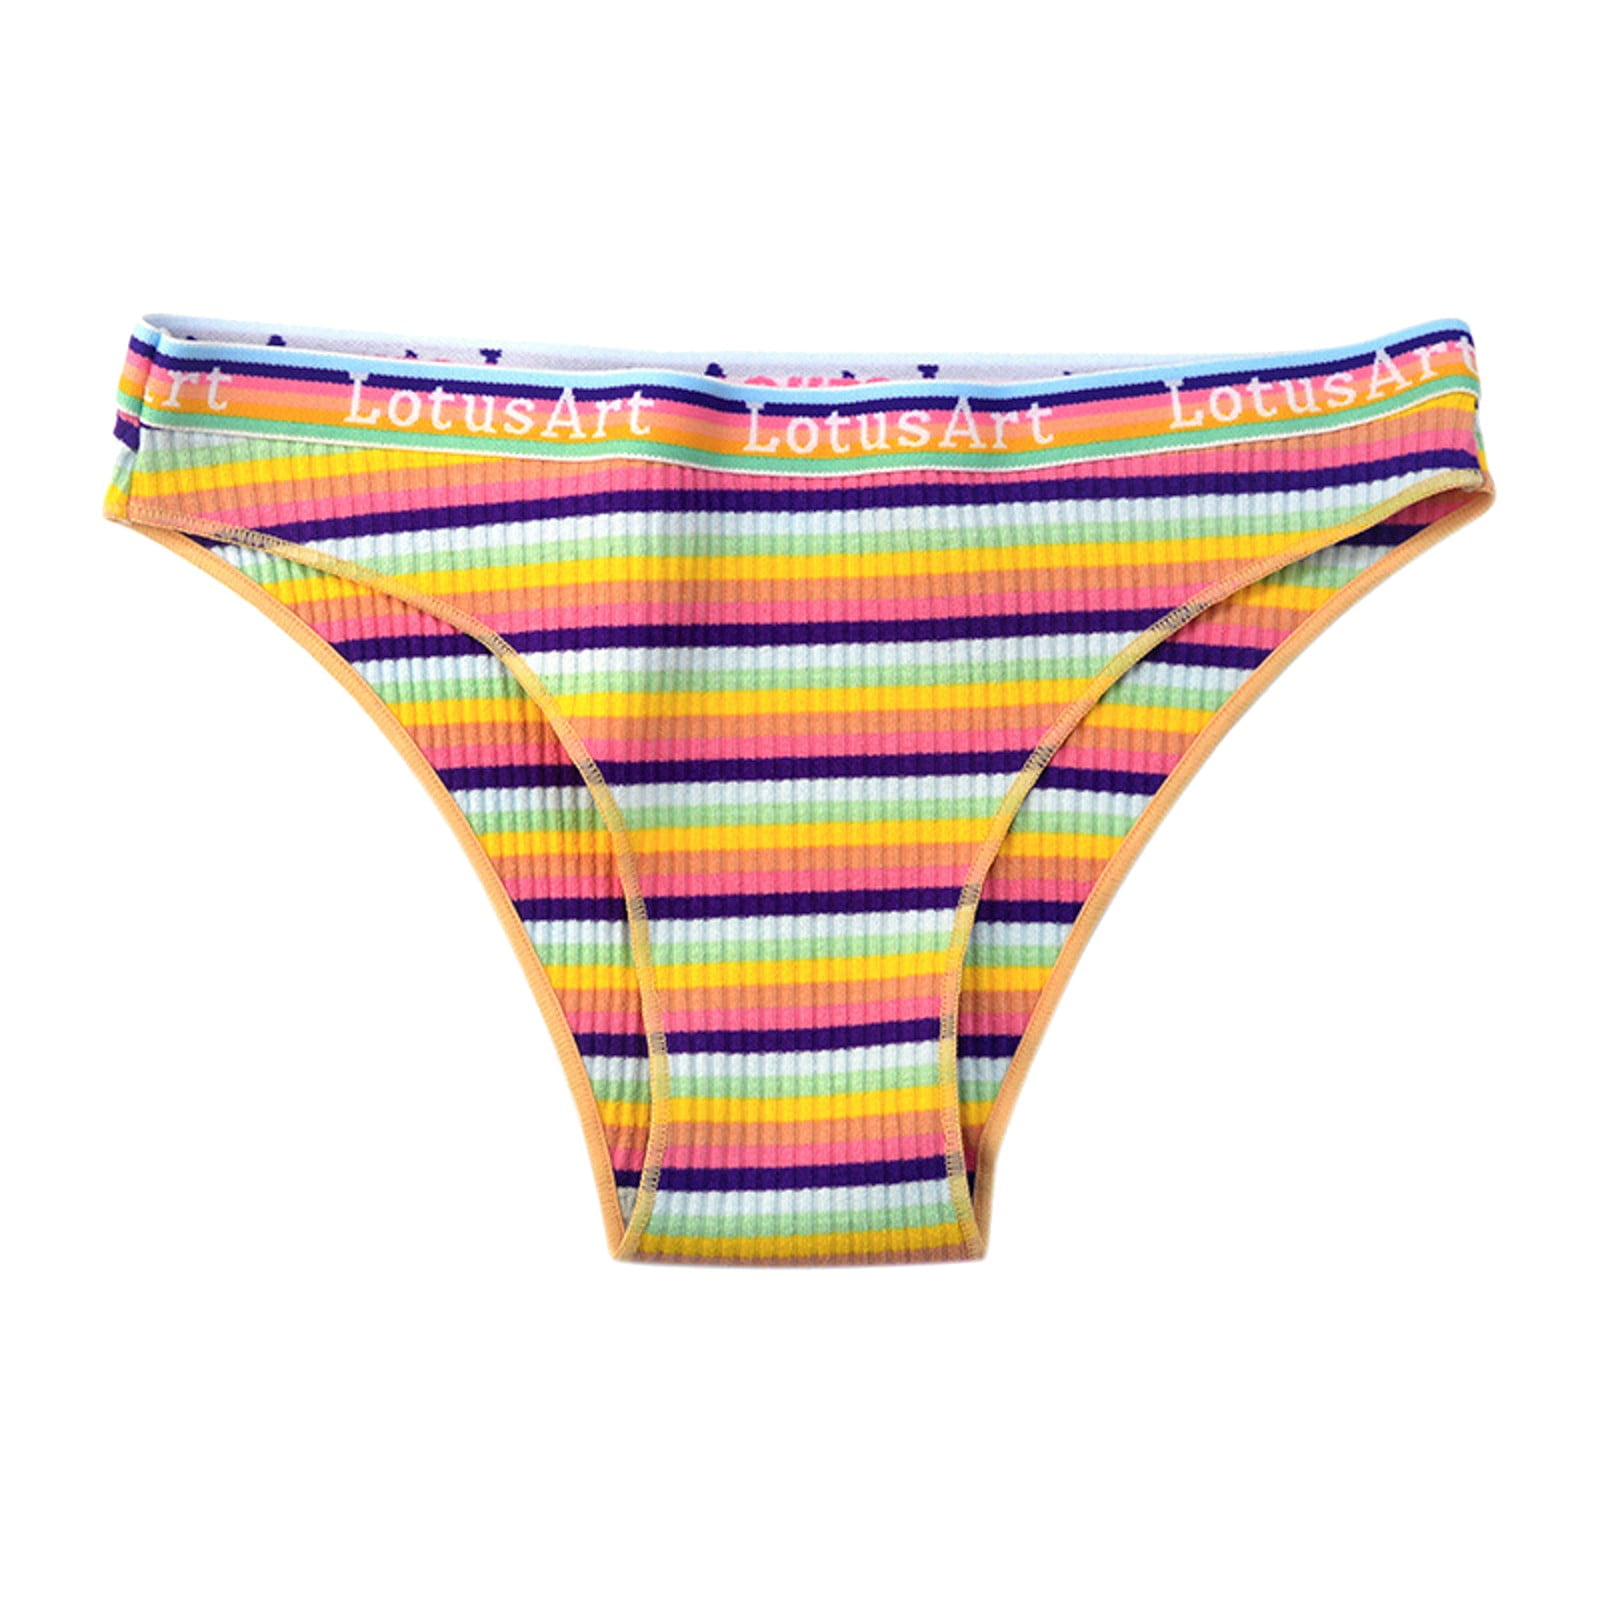 adviicd Cute Underwear Teen Girls Underwear Cotton Soft Panties for Teens  Briefs Pink Medium 